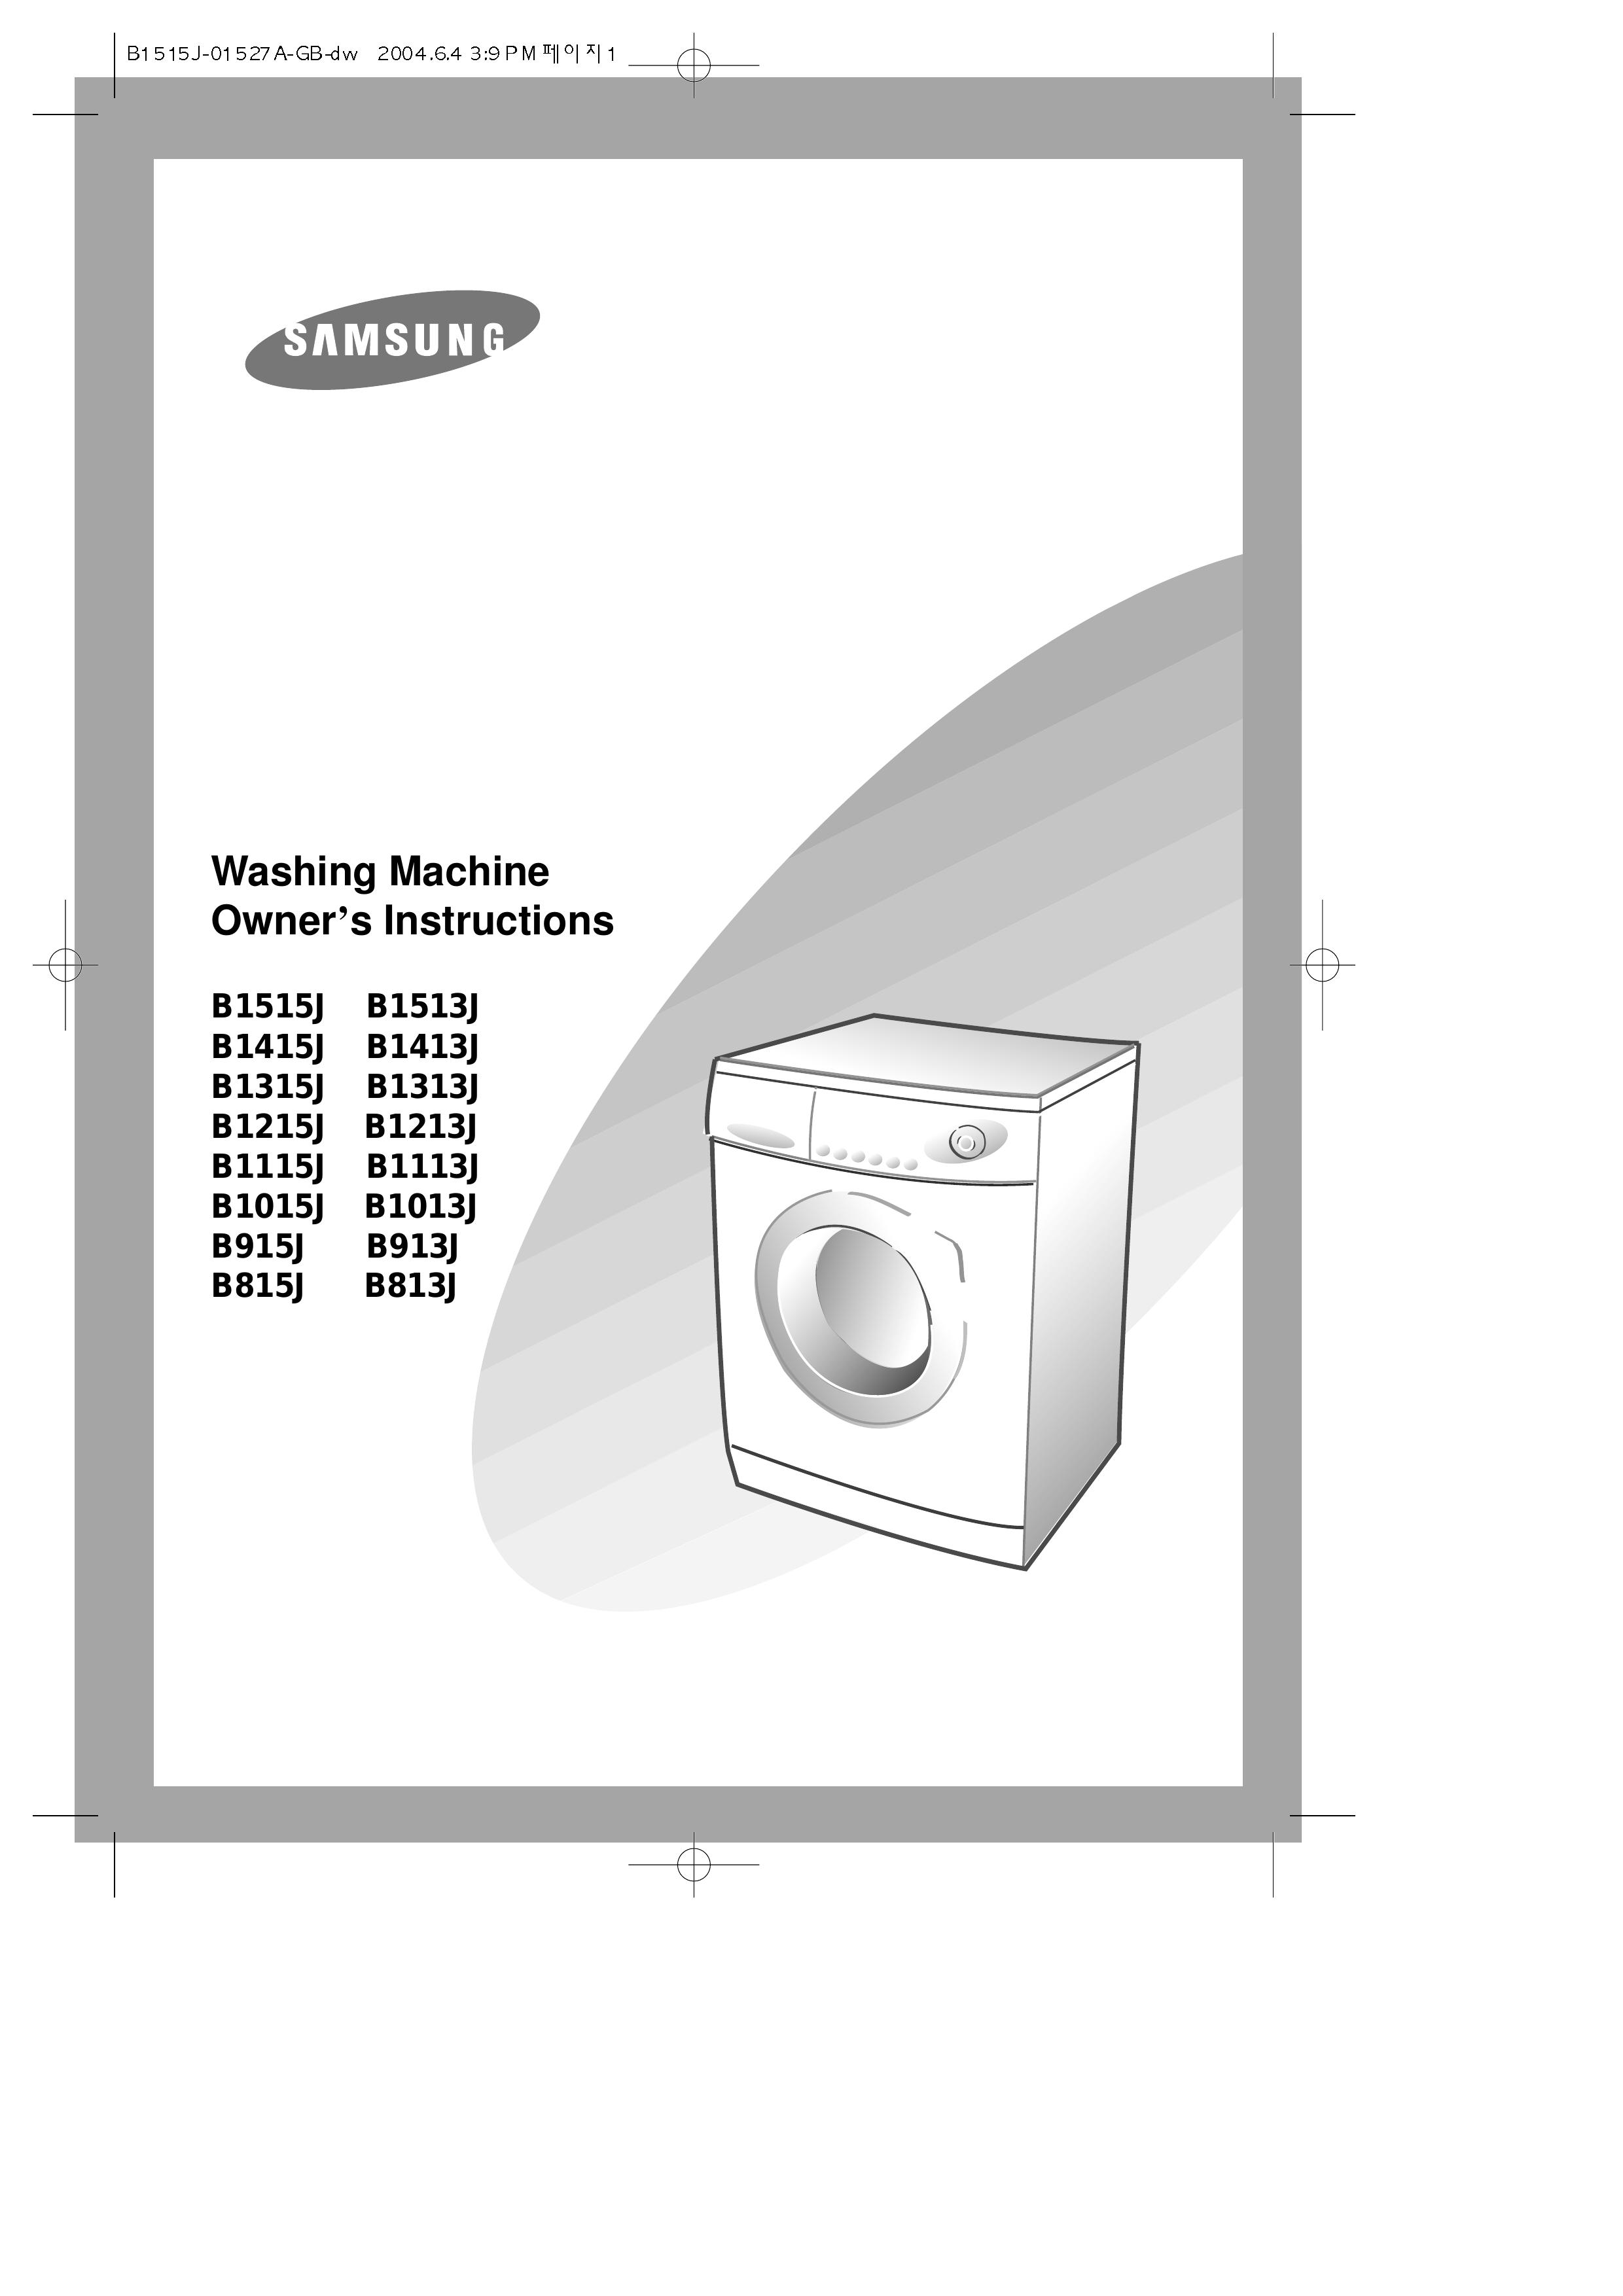 Samsung B1015J Washer User Manual